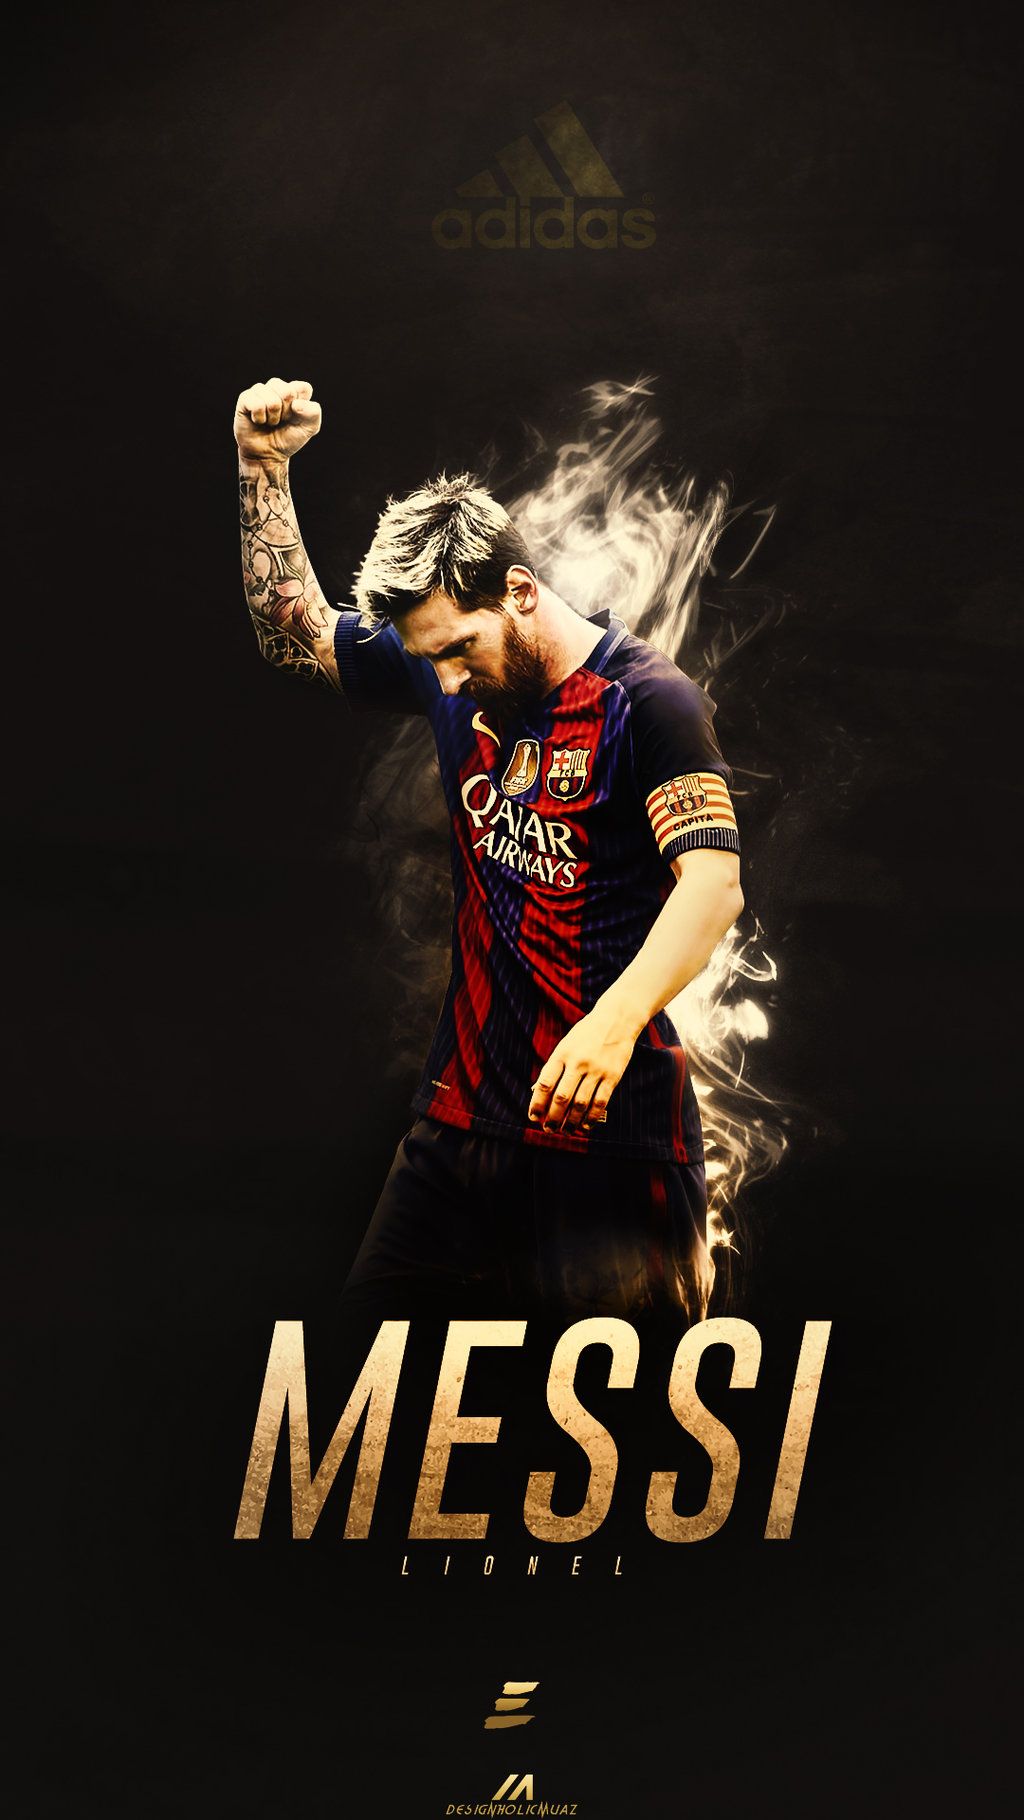 Lionel Messi Trophy Wallpapers - Top 25 Best Lionel Messi Trophy Wallpapers  Download